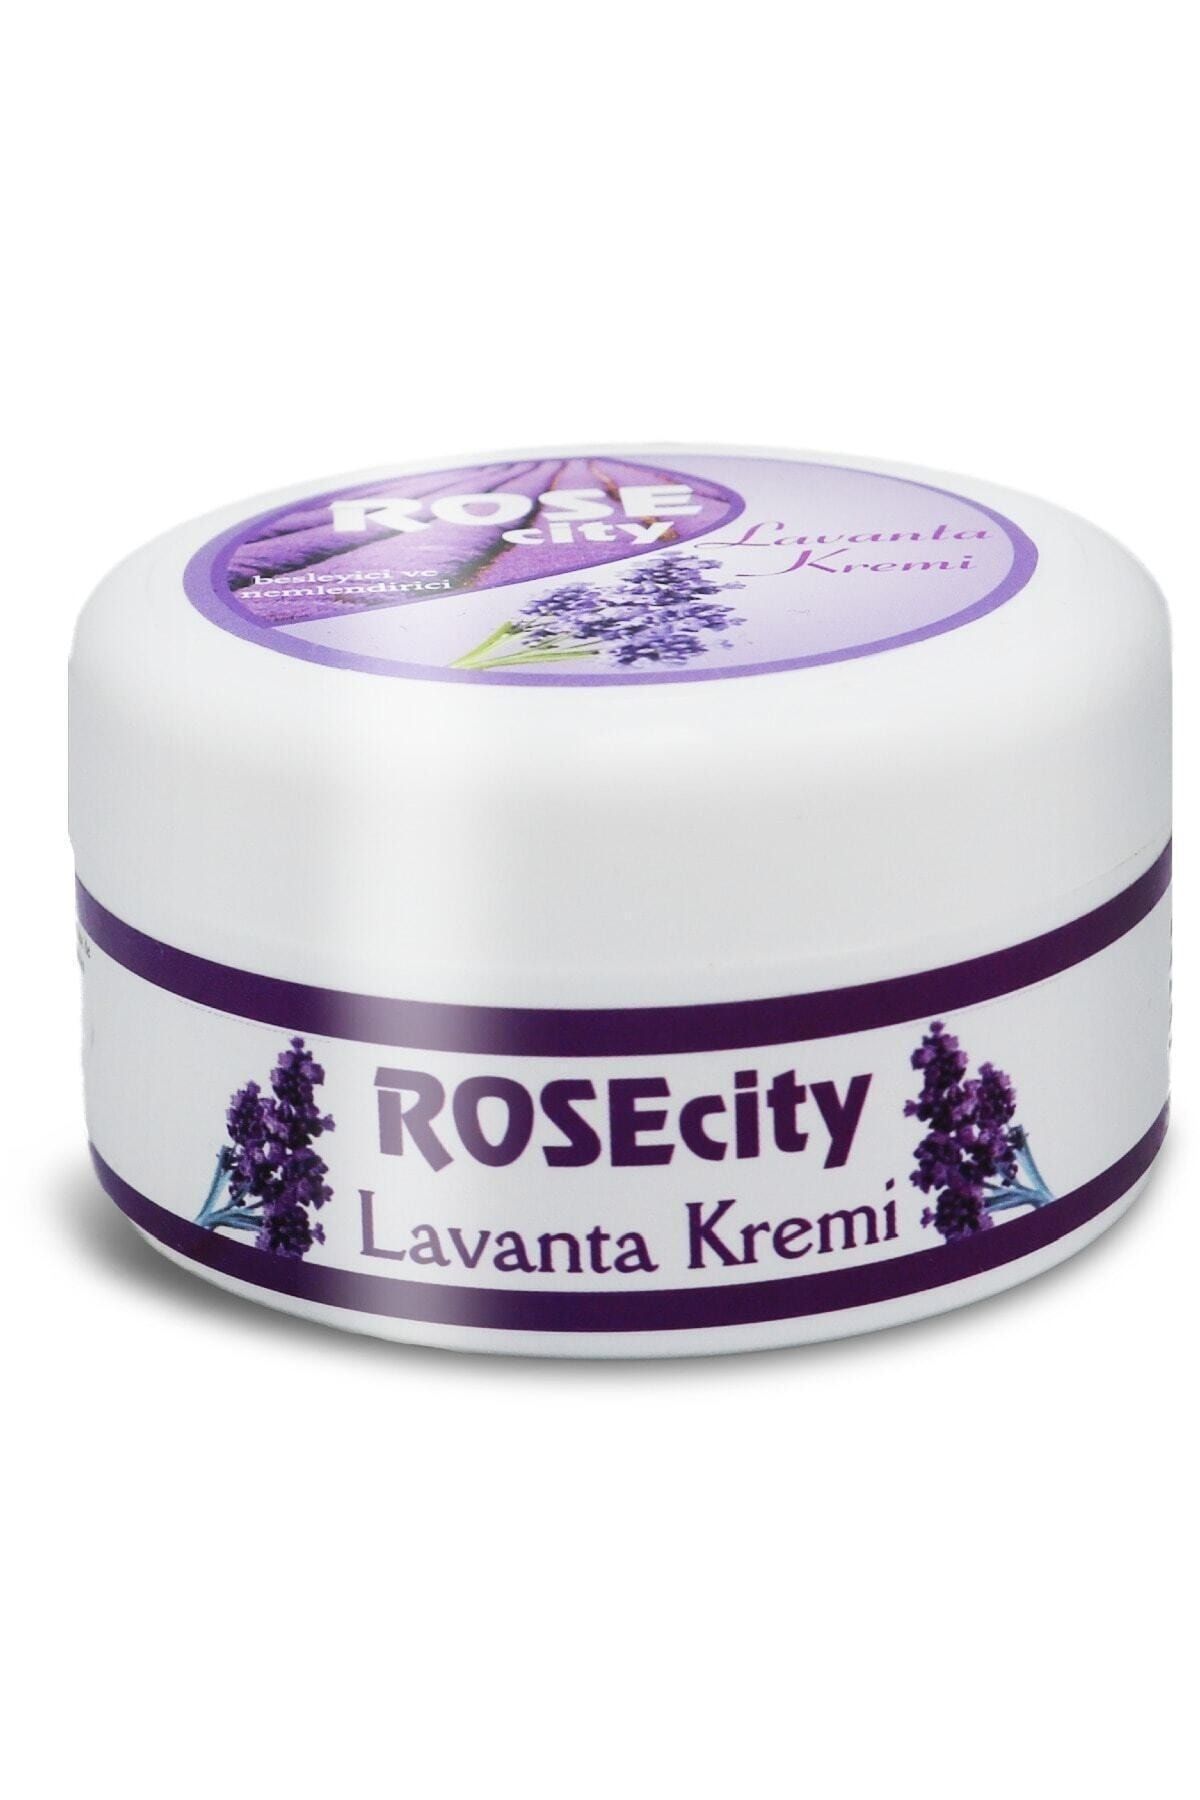 rosecity Lavanta Kremi 85 ml Besleyici Ve Nemlendirici